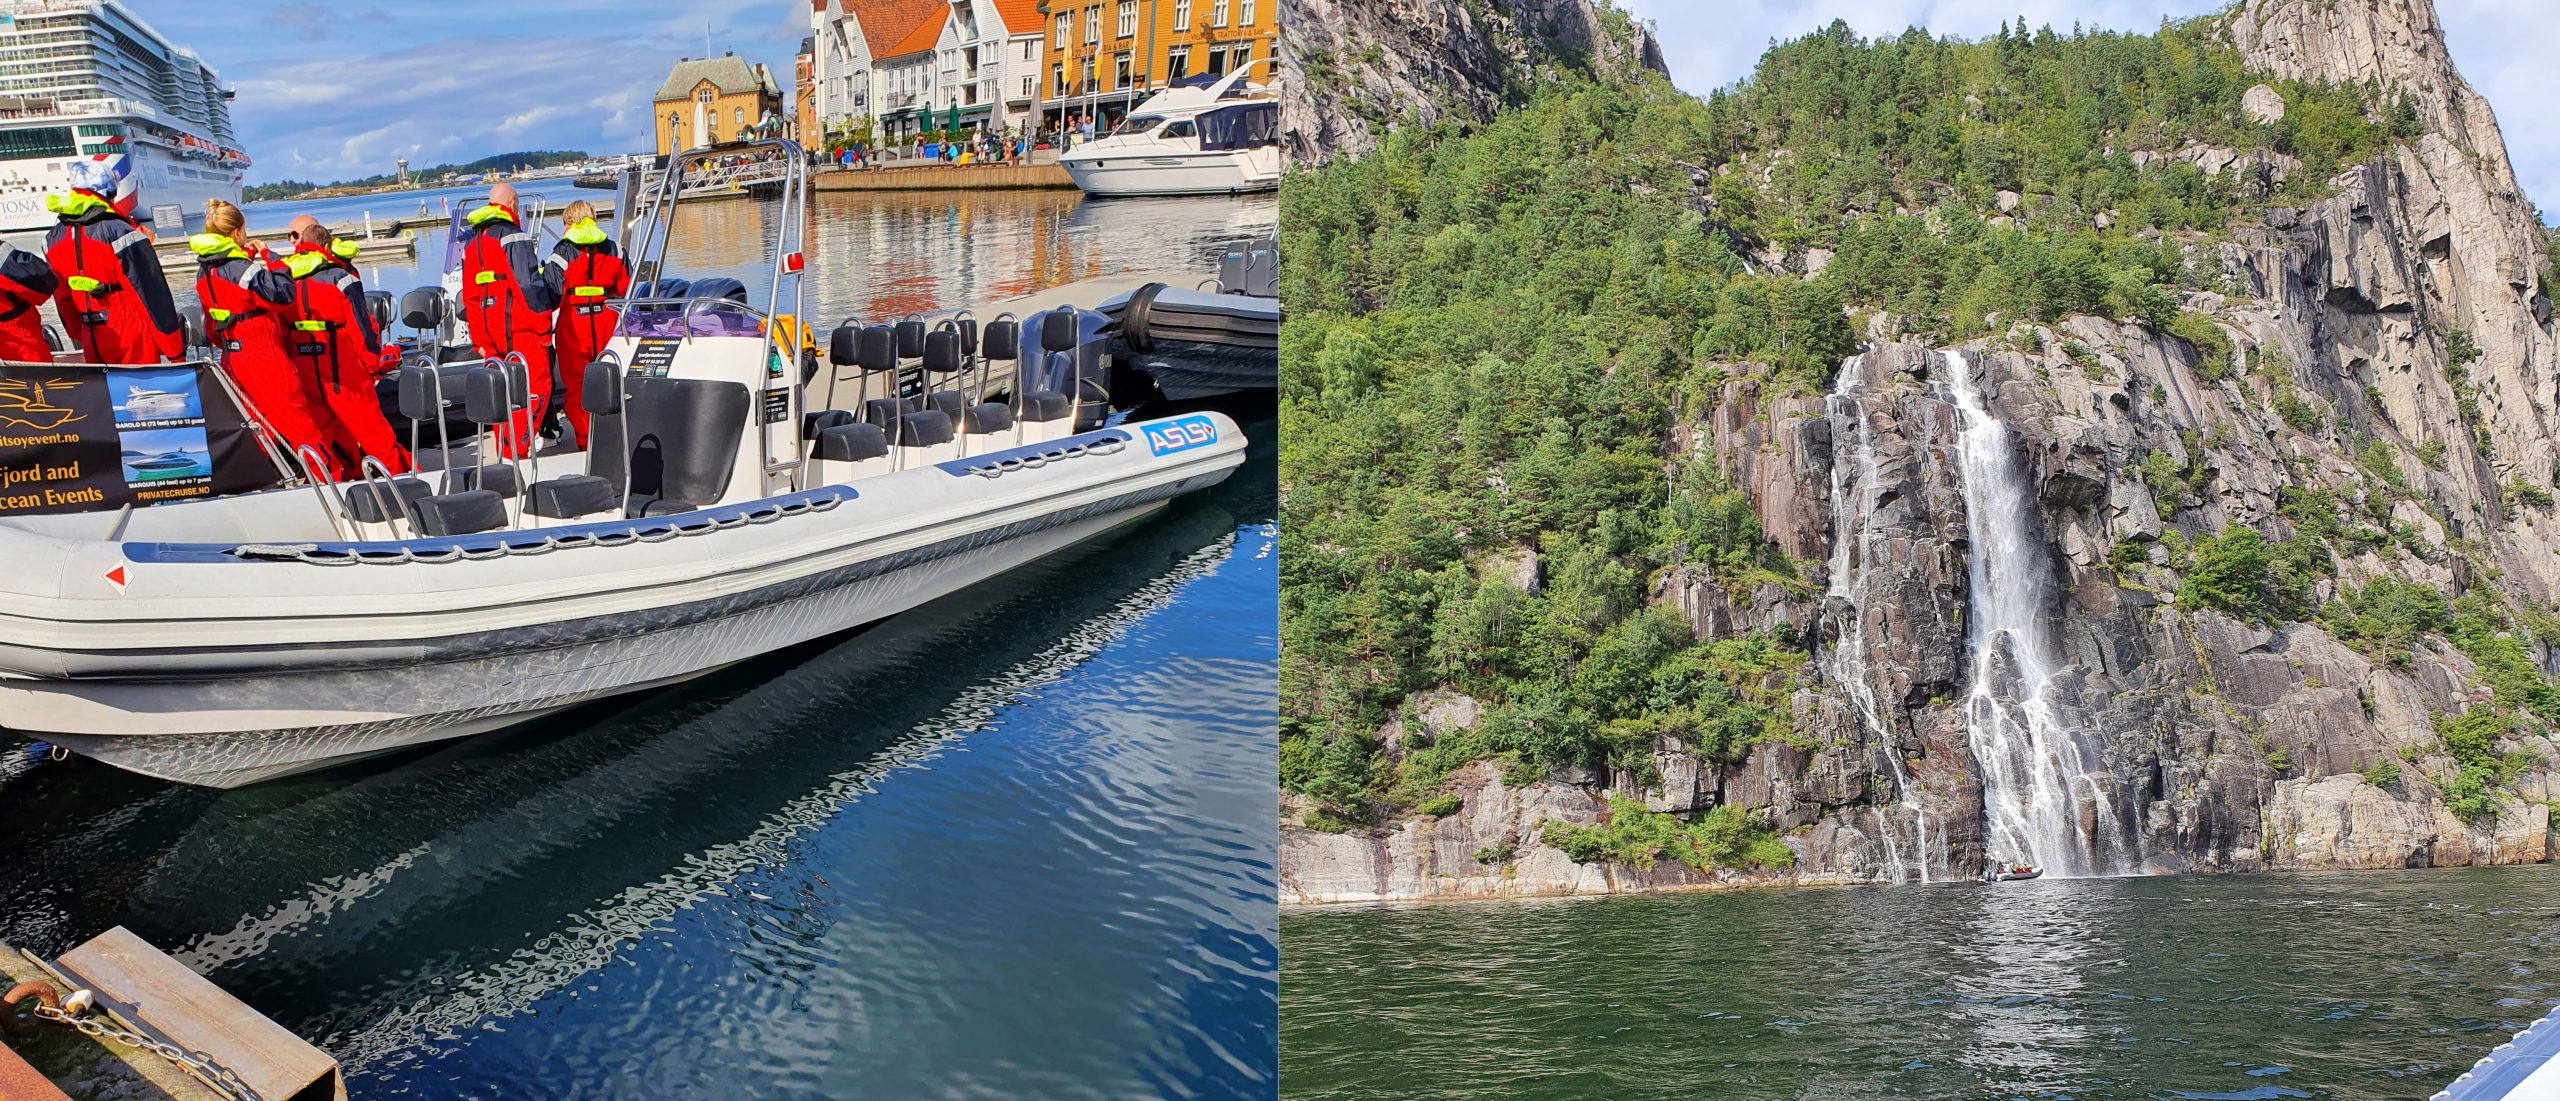 Mette (54) fra Stavanger – “Fantastisk med lukten av sjø, og å være så tett på naturen”